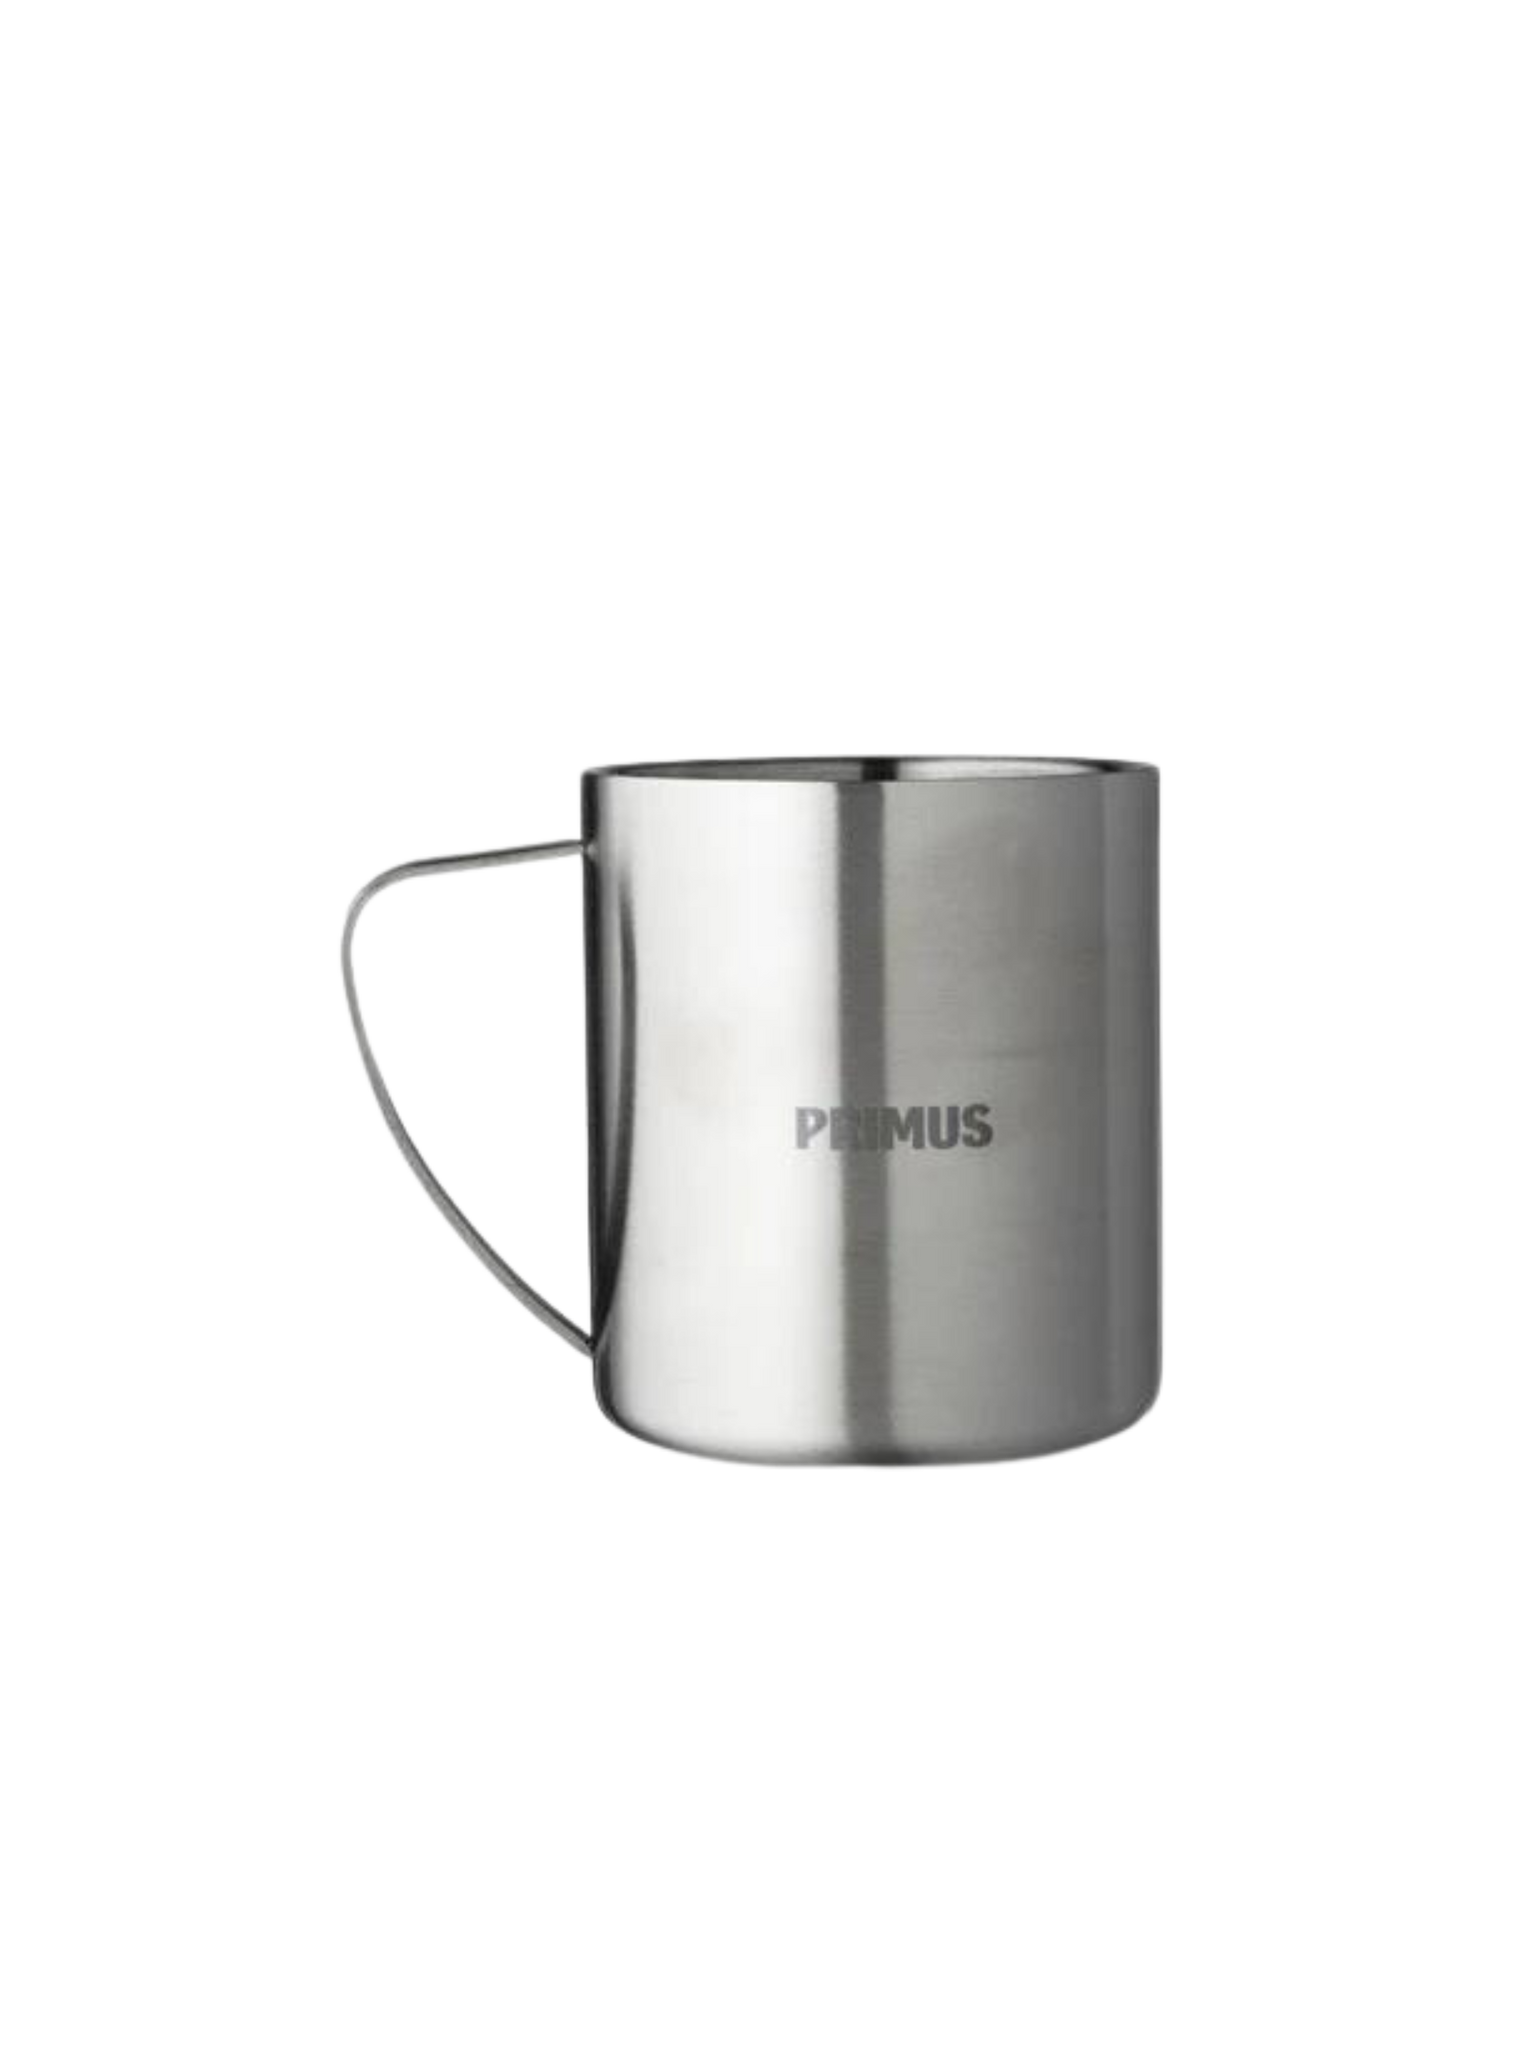 Primus 4 - Season Mug 0.3l ~ Stainless